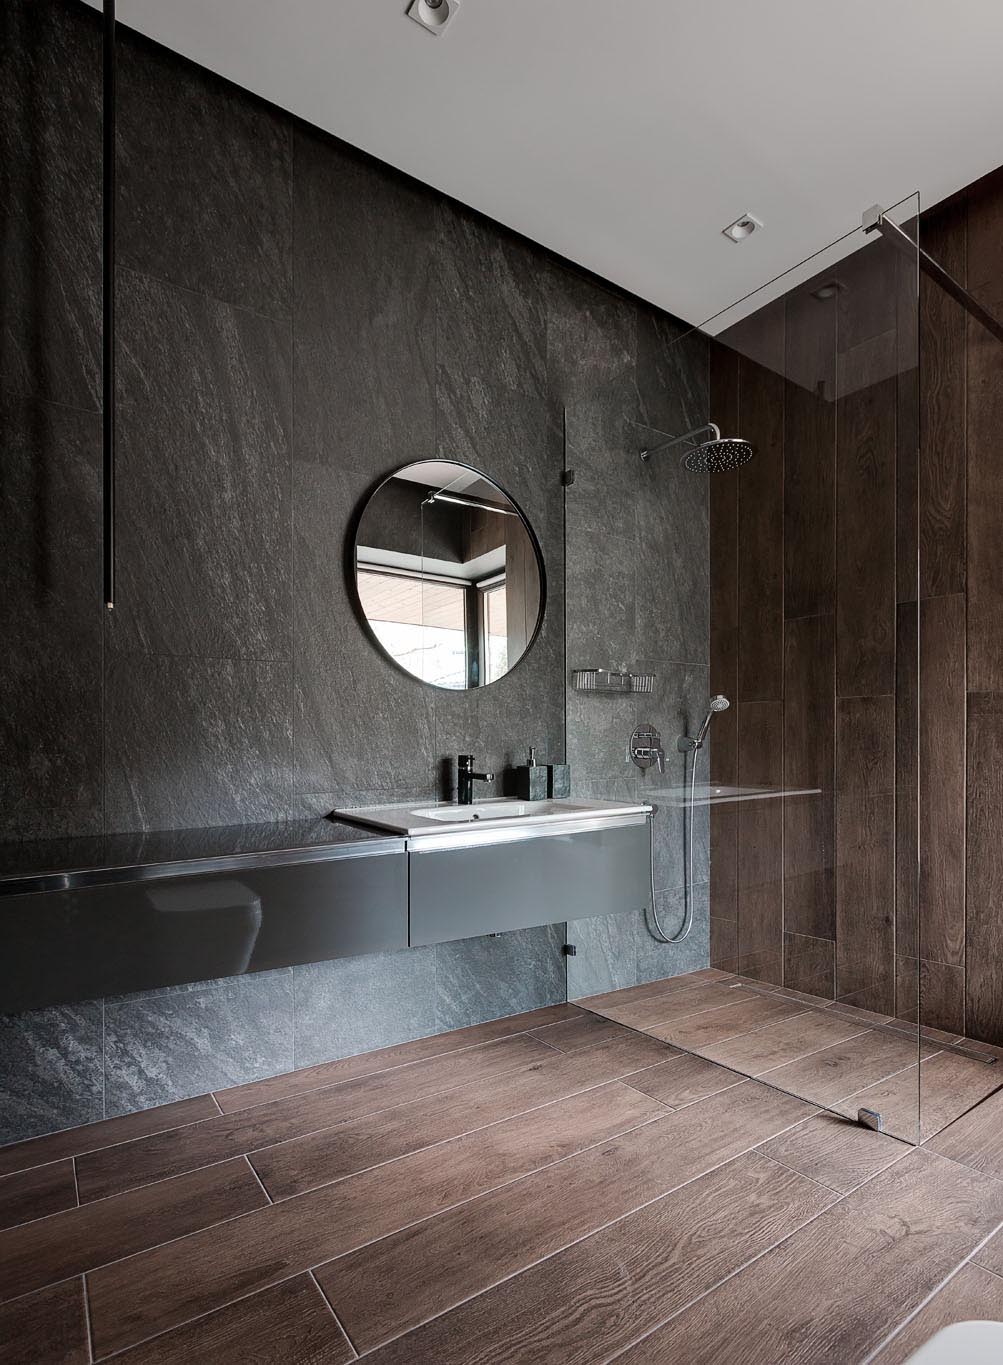 Phòng tắm hiện đại này có bảng màu vật liệu tối với tường xám, gạch ốp gỗ từ sàn lên tường và bàn trang điểm màu đen nổi.